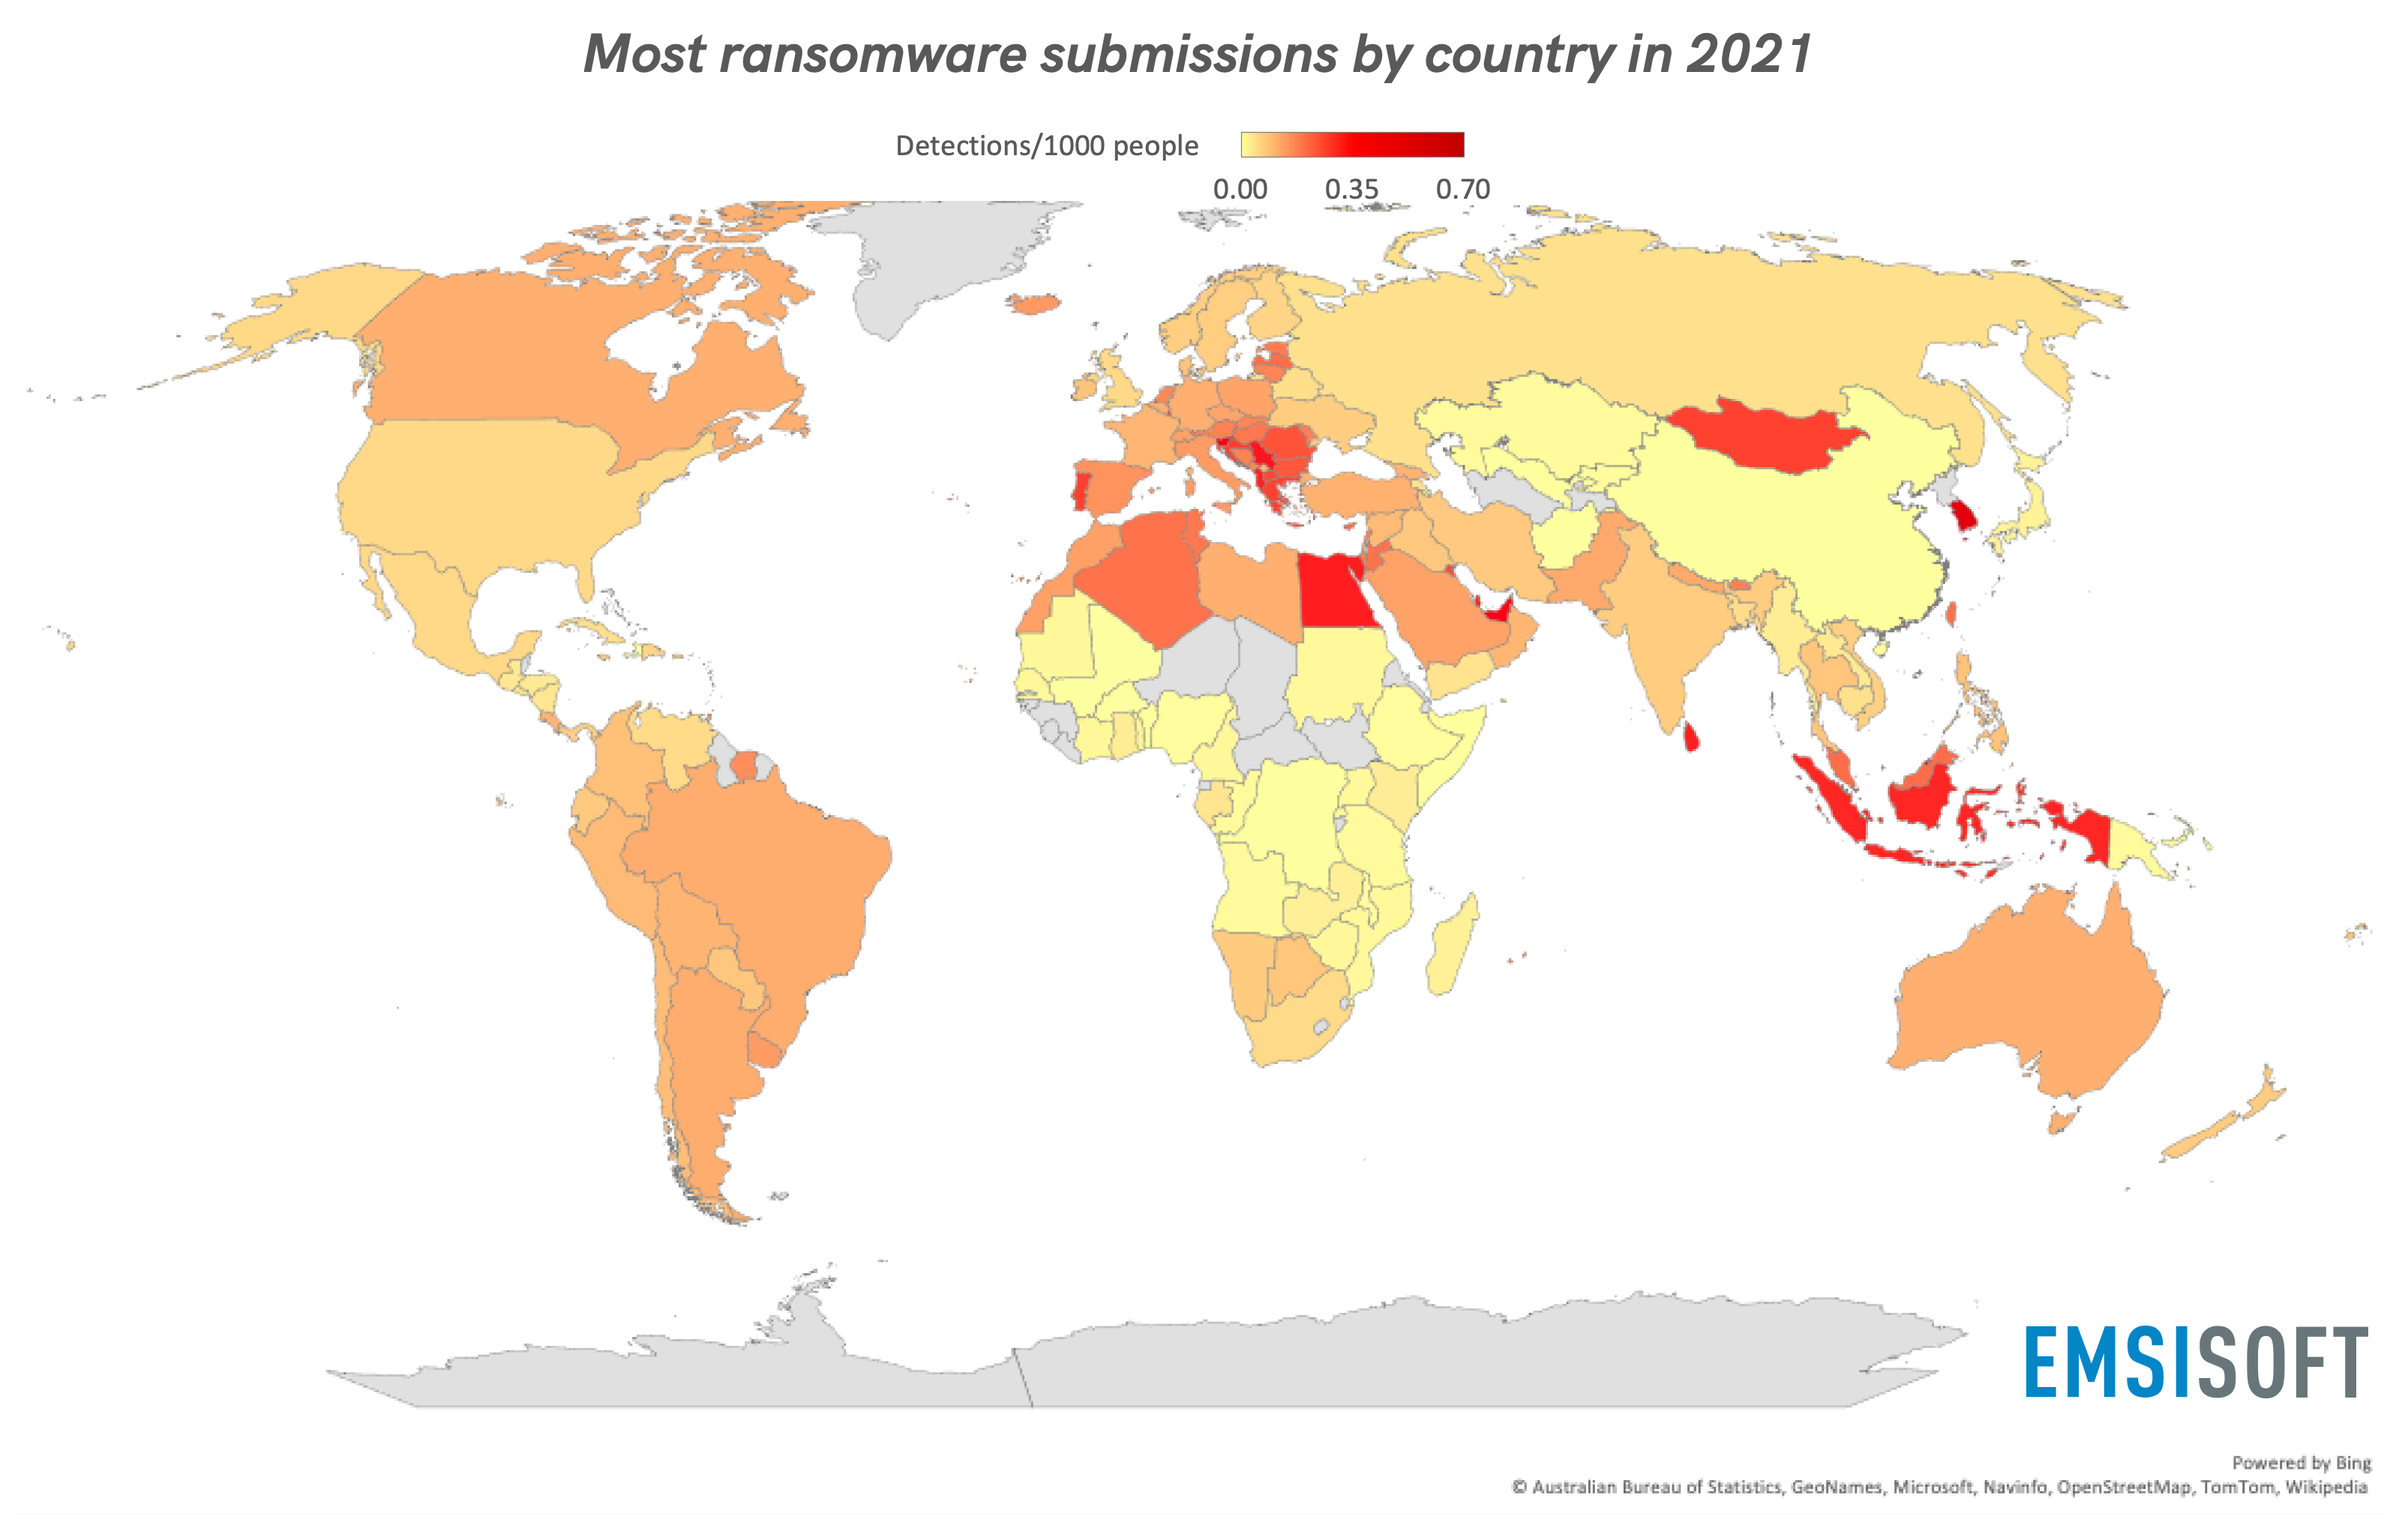 Die meisten Ransomware-Einsendungen nach Land 2021